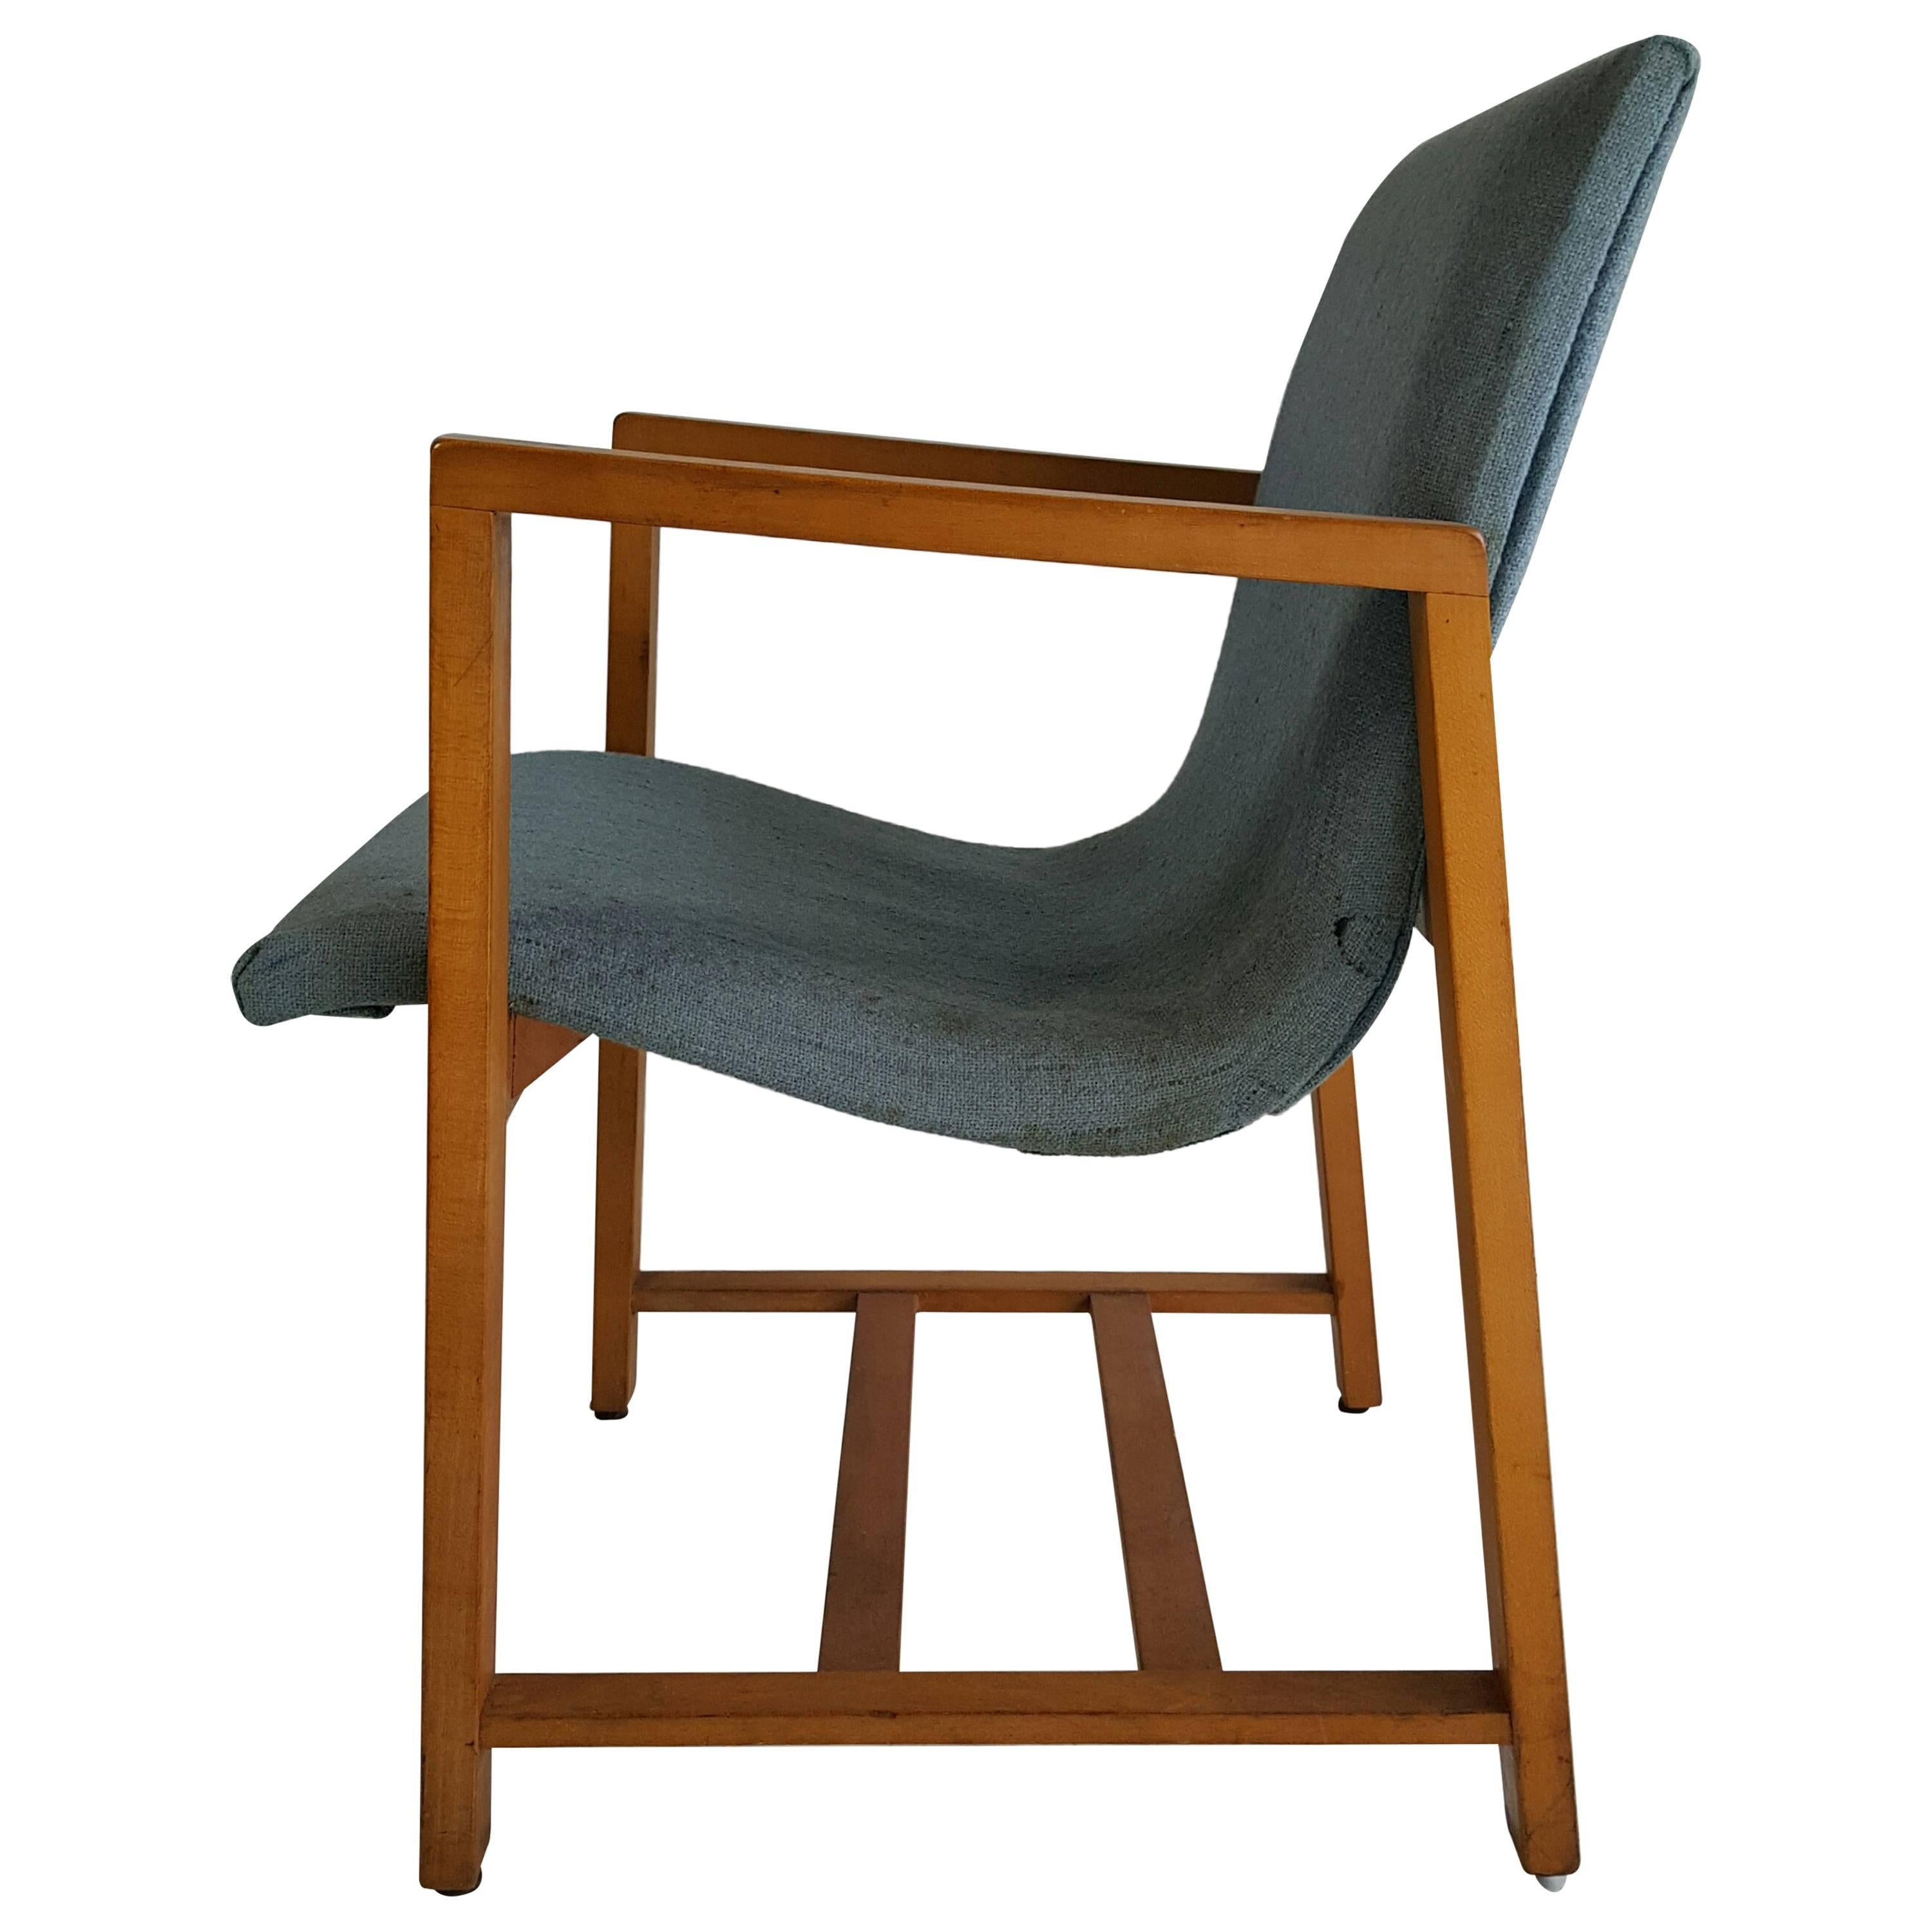 Rare "Kleinhans" Chair, circa 1939 Charles Eames/Eero Saarinen For Sale